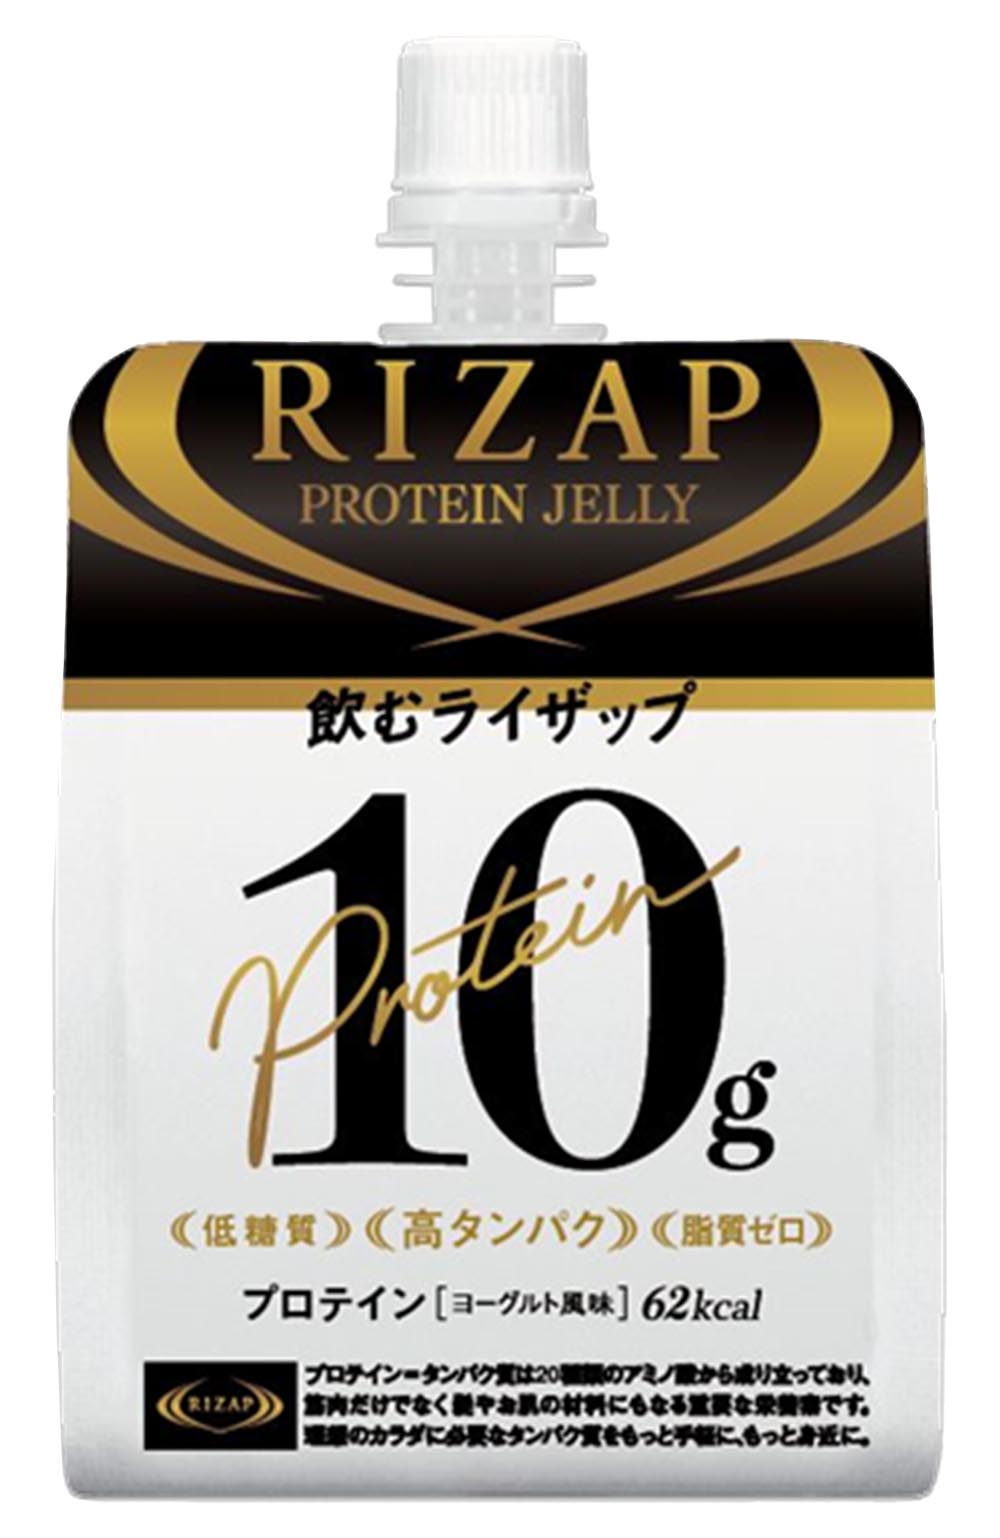 RIZAP初の自社開発・一般流通商品”ライザップ・ウェルネスシリーズ